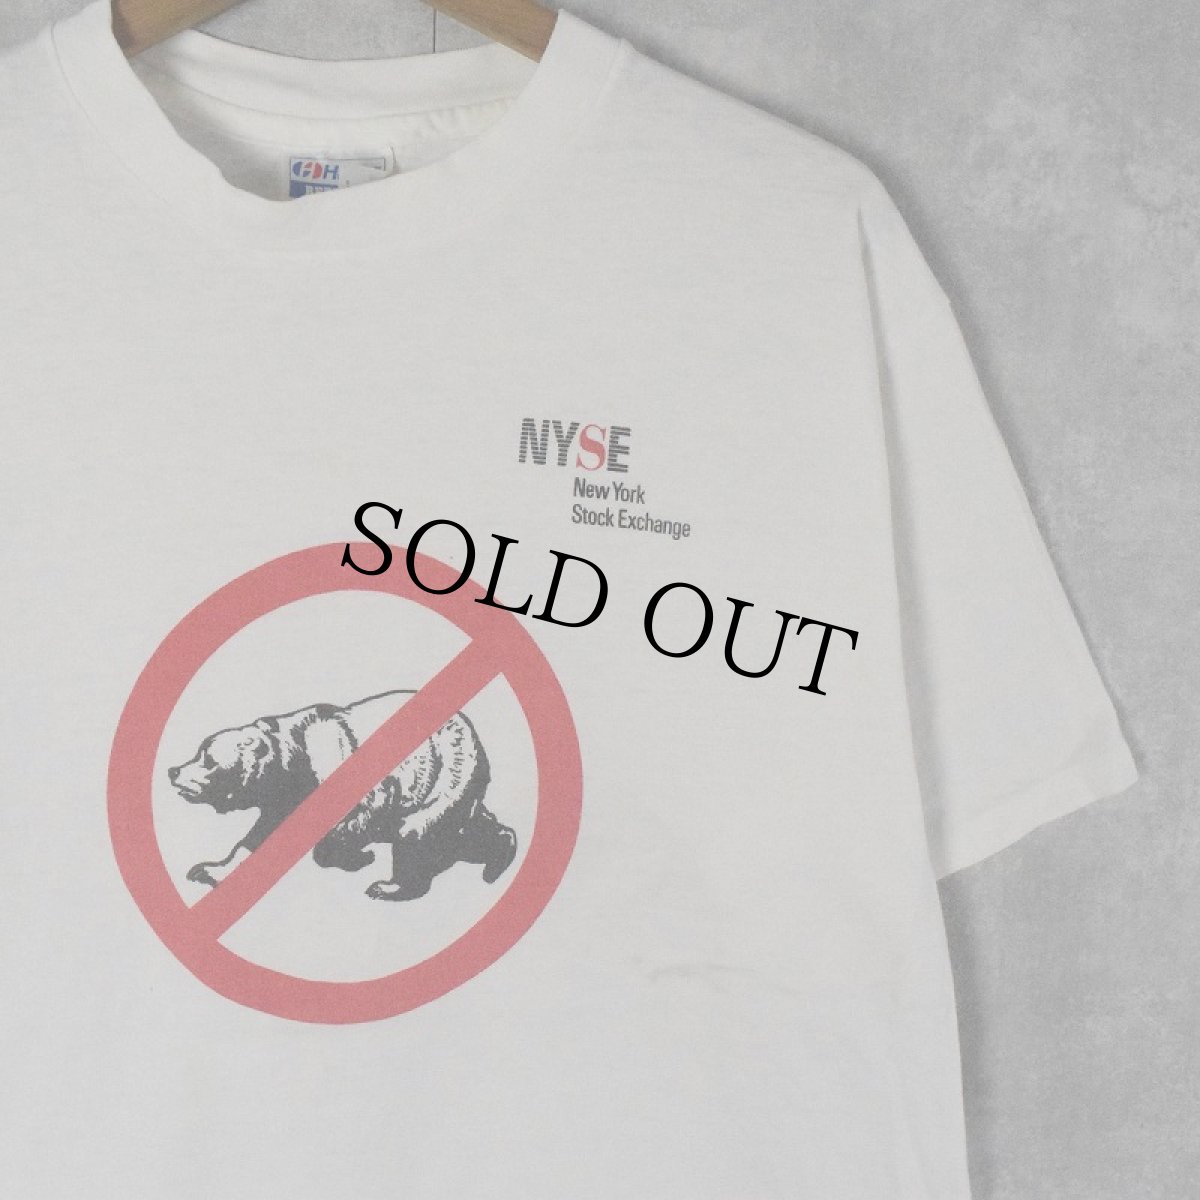 画像1: 90's NYSE USA製 クマプリント 企業Tシャツ XL (1)